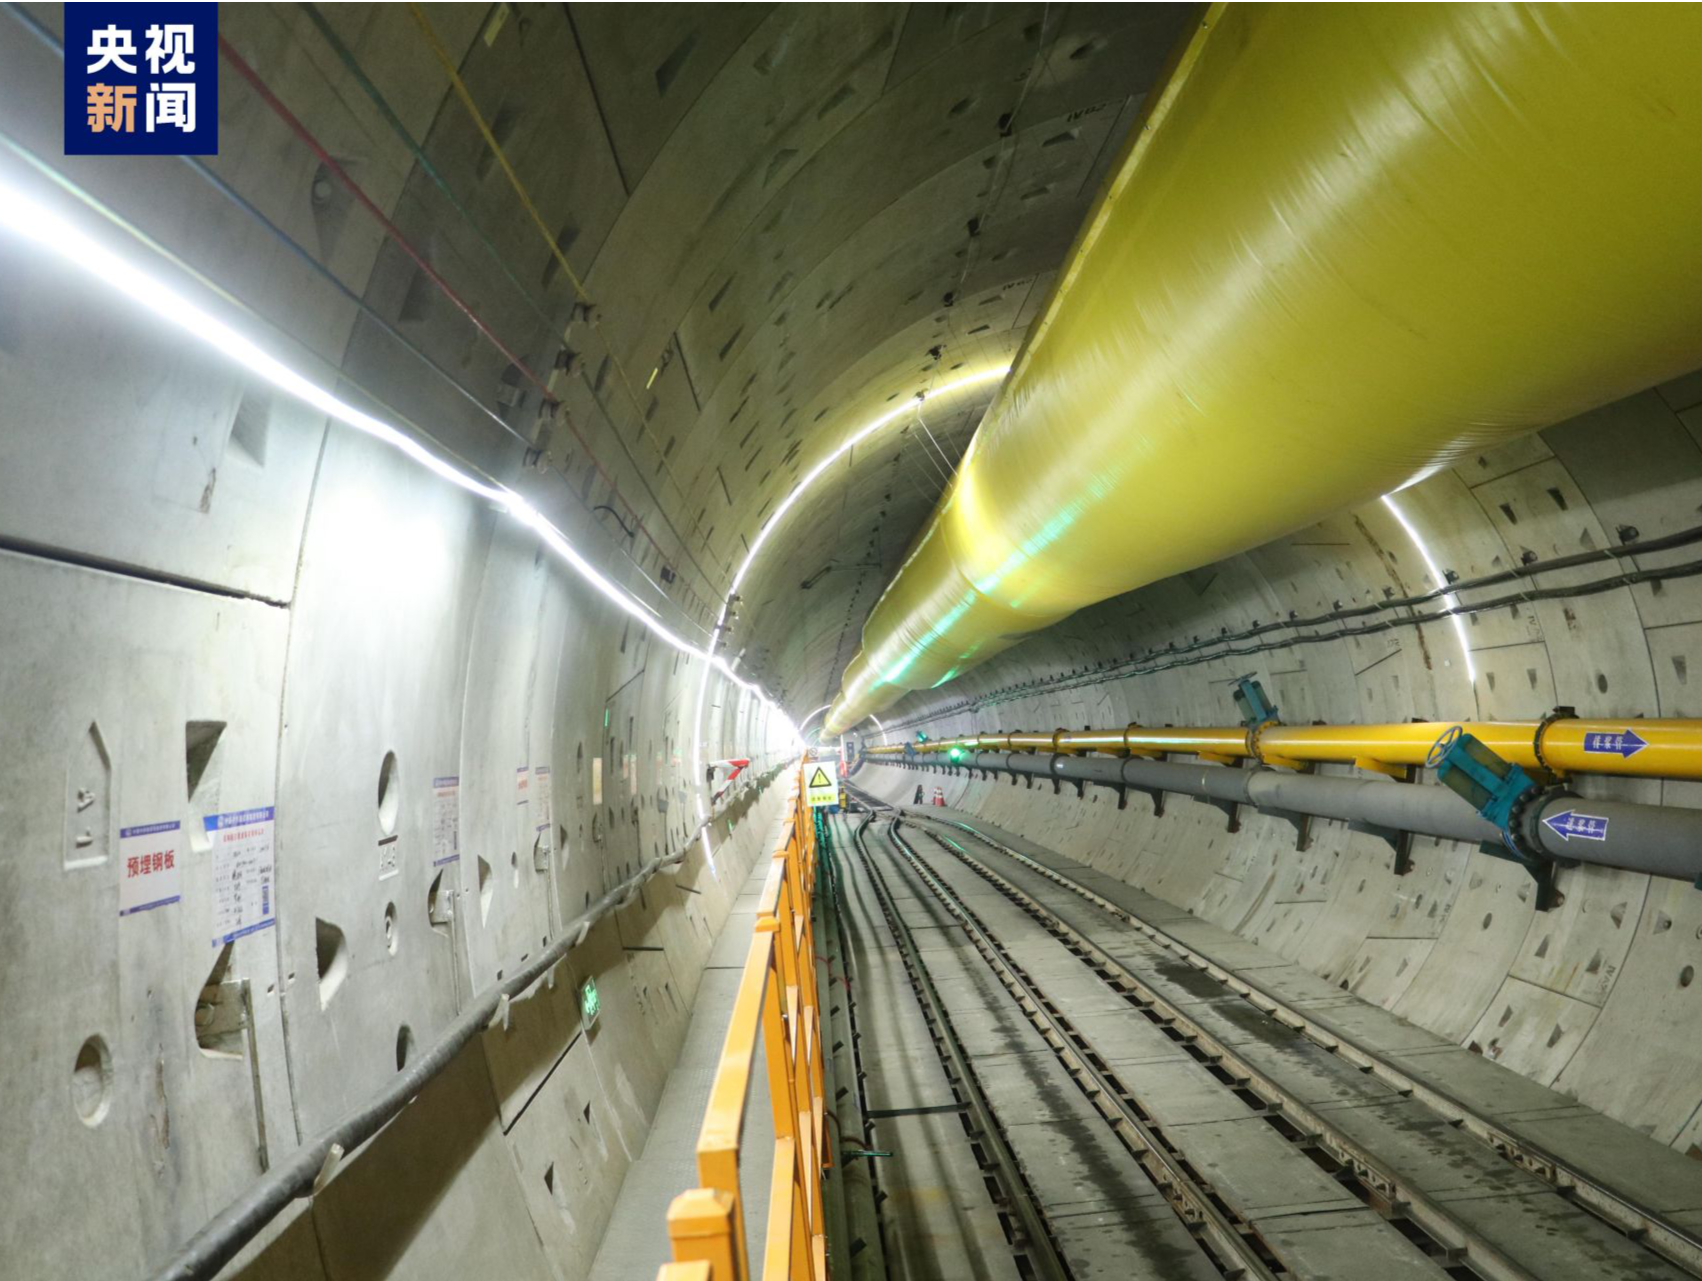 中俄东线天然气管道穿越长江隧道贯通